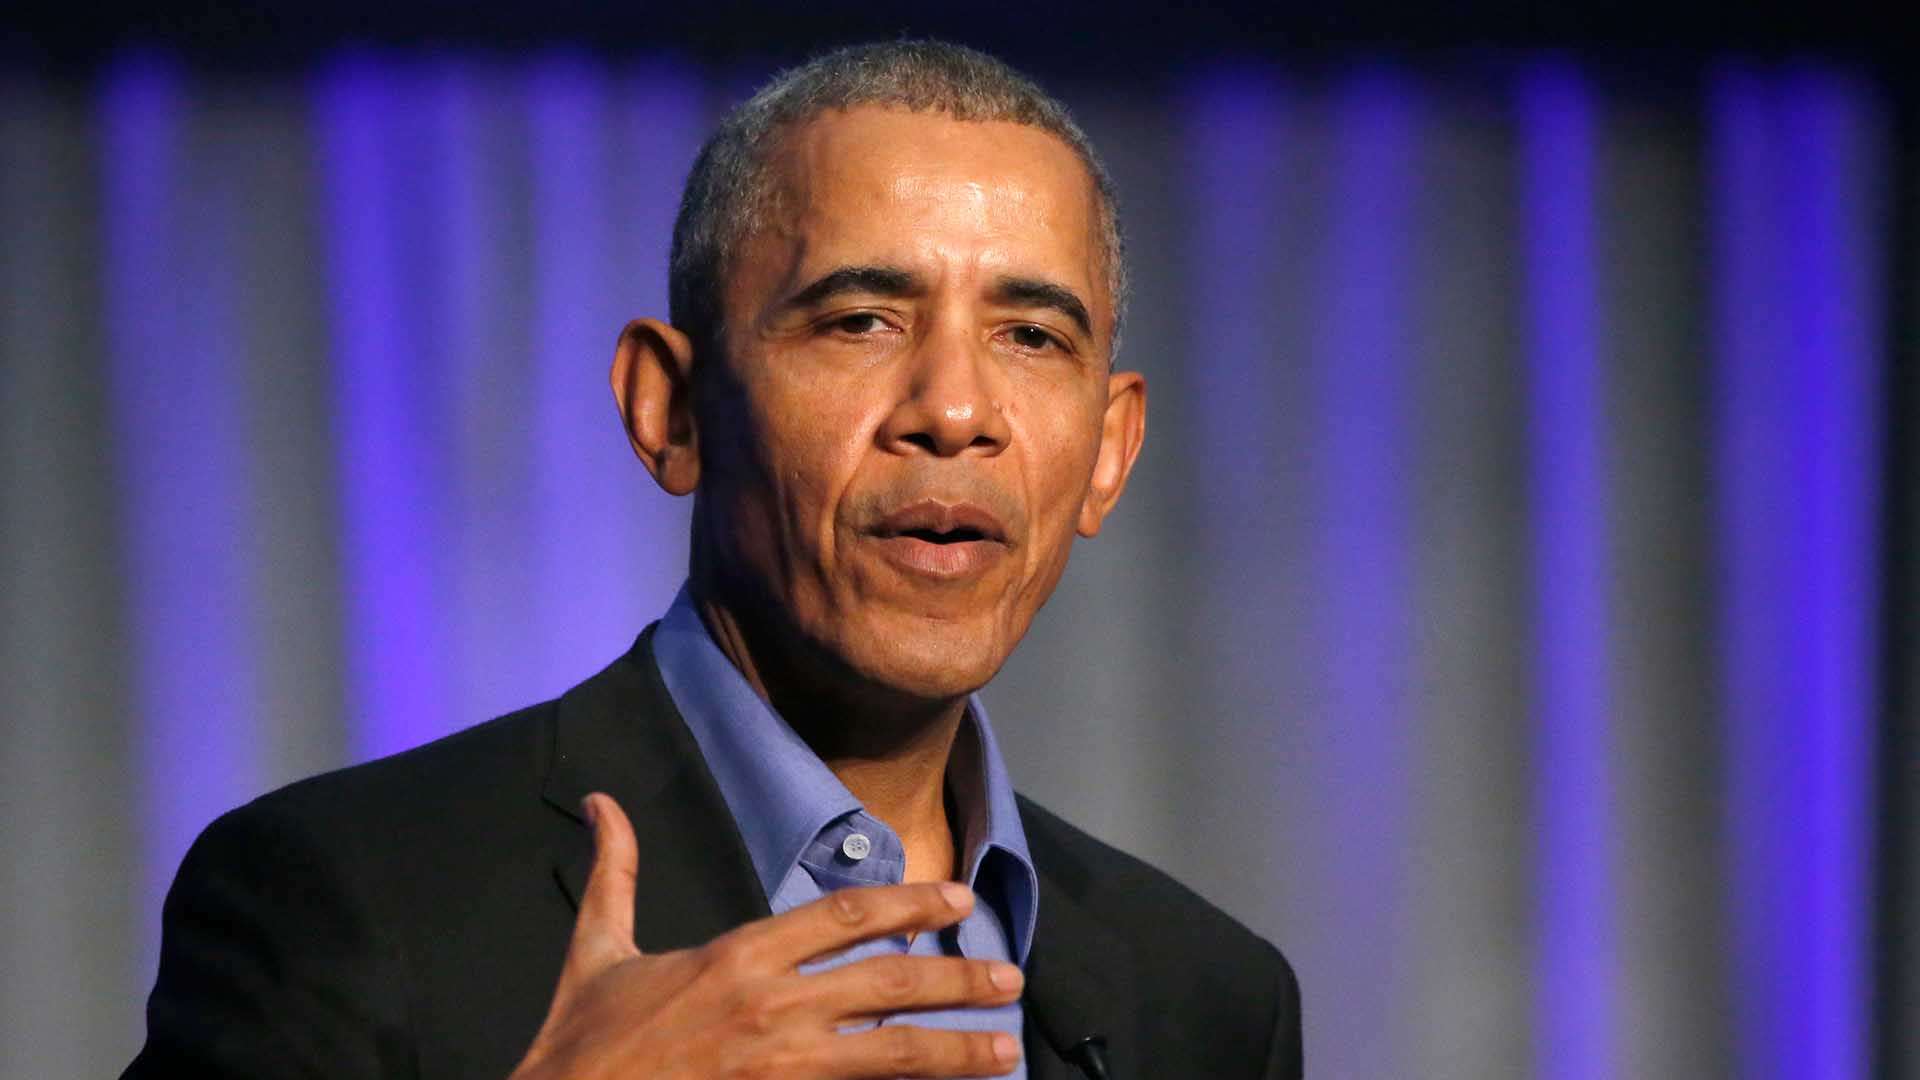 Obama participará en Madrid en un foro sobre ciencia, economía y desarrollo sostenible